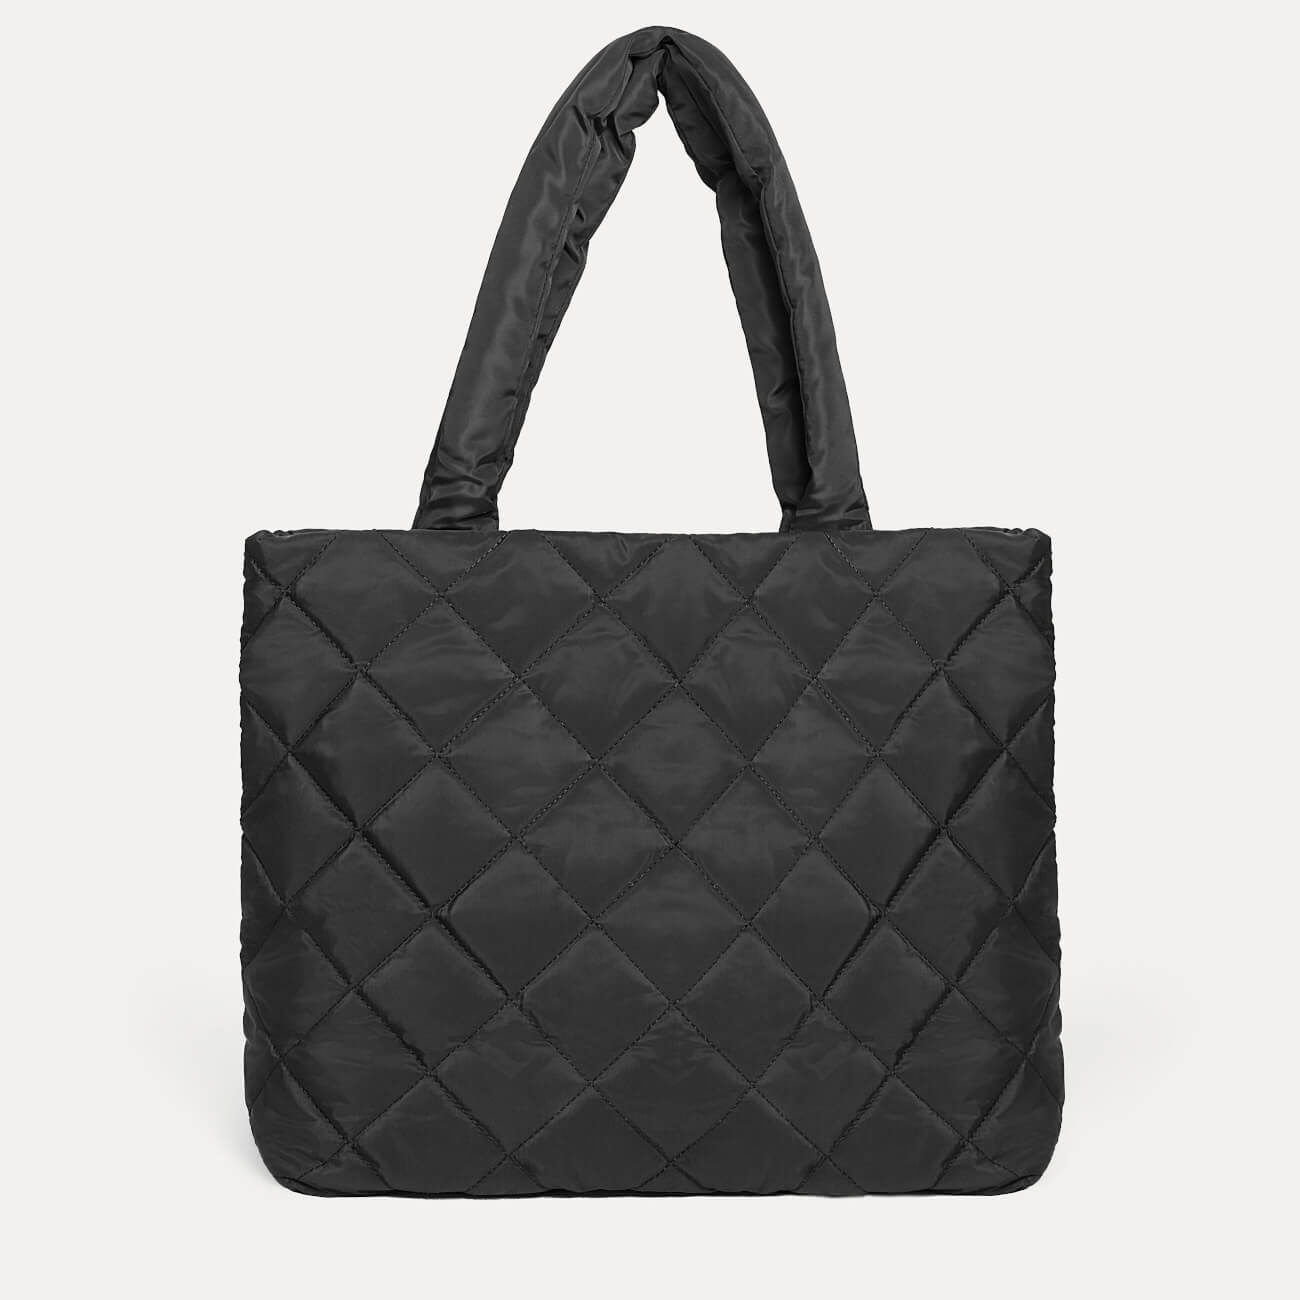 Сумка женская, 45х37 см, стеганая, полиэстер, черная, One stitch сумка для ноутбука rivacase 7520 13 3 полиэстер черная